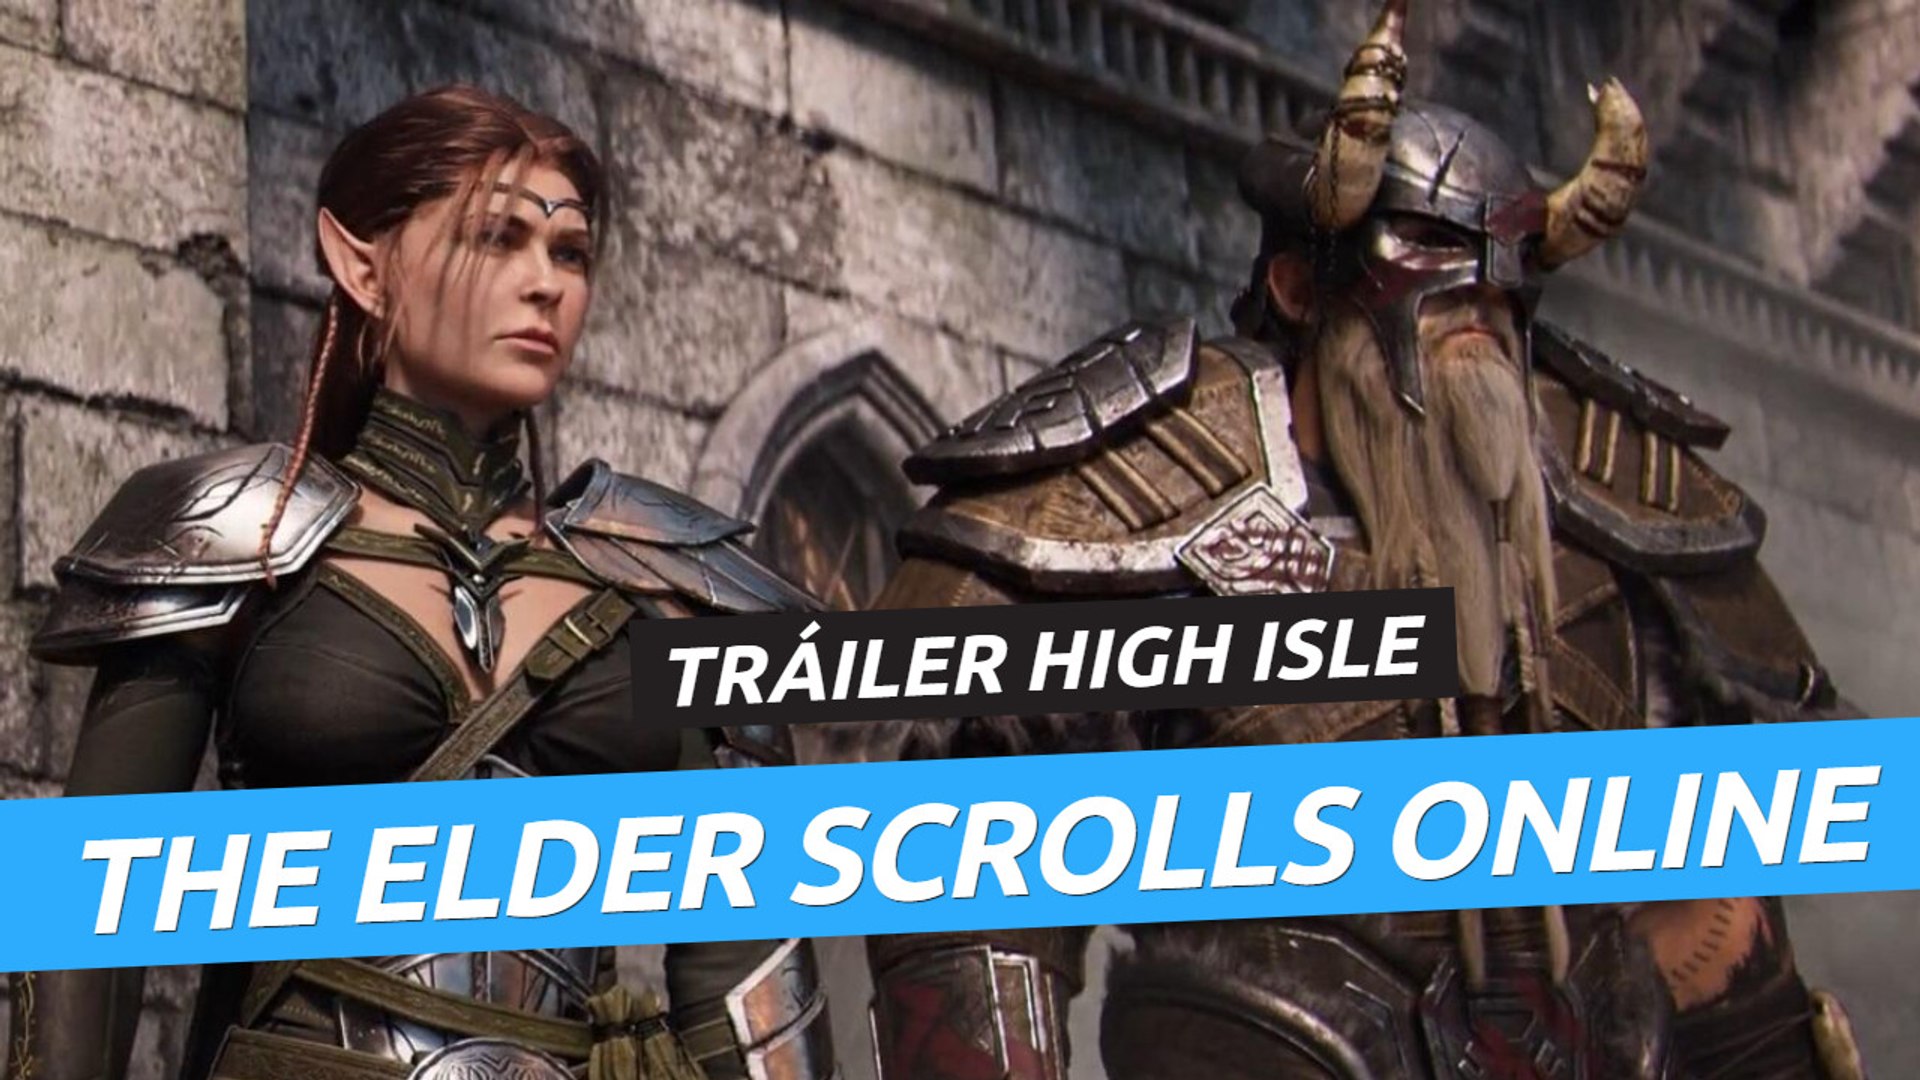 Teaser de anuncio de The Elder Scrolls VI - Vídeo Dailymotion